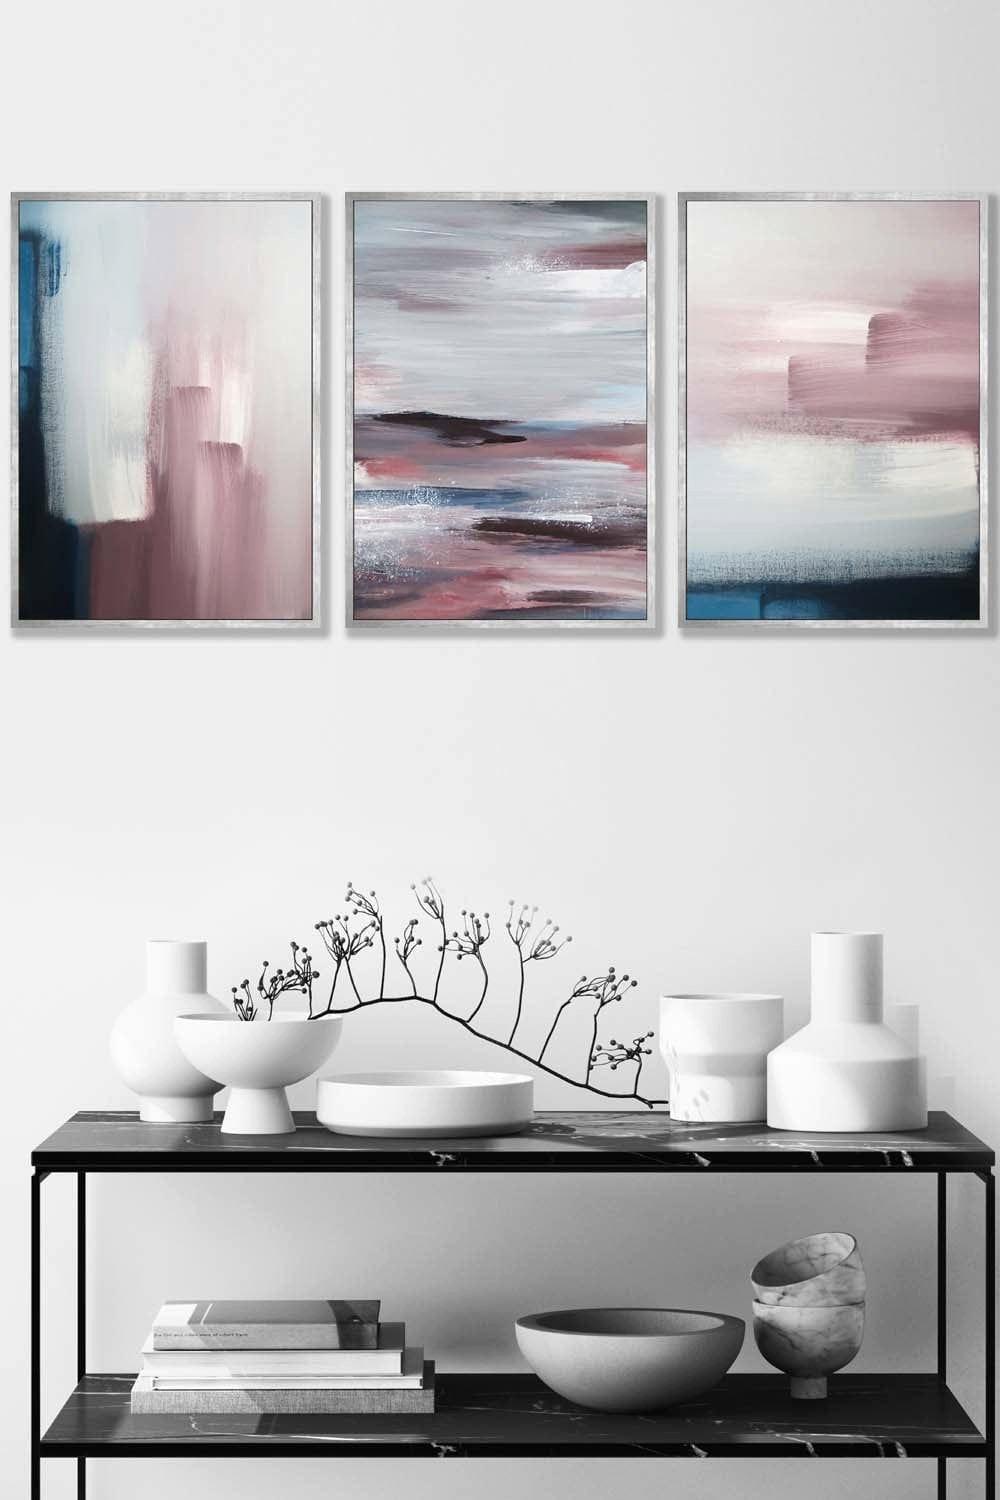 Abstract Navy Blue Grey Blush Pink Oil Framed Wall Art - Medium